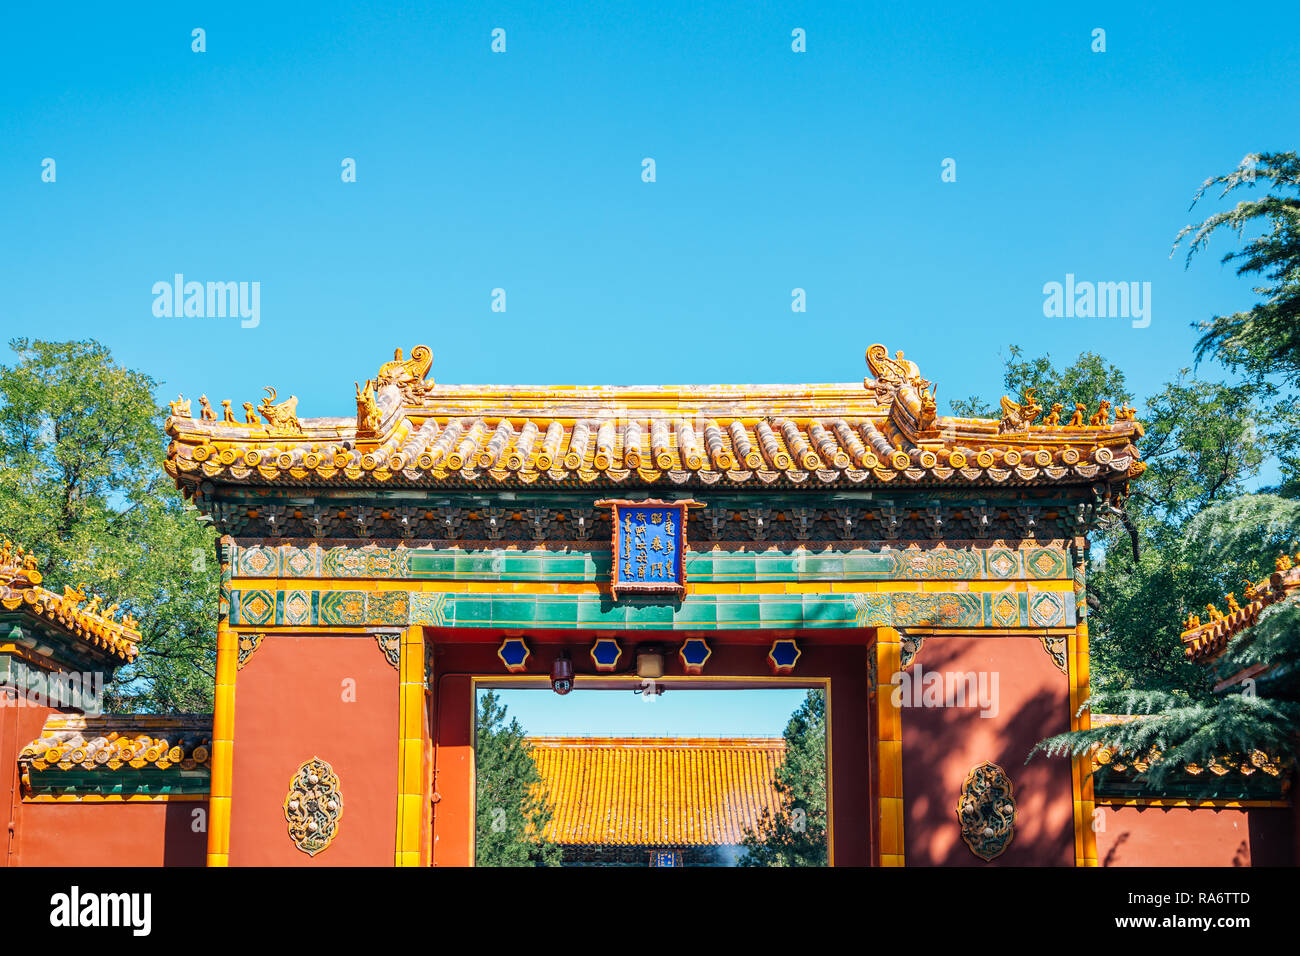 Il Tempio dei Lama, architettura tradizionale Cinese a Pechino, Cina Foto Stock